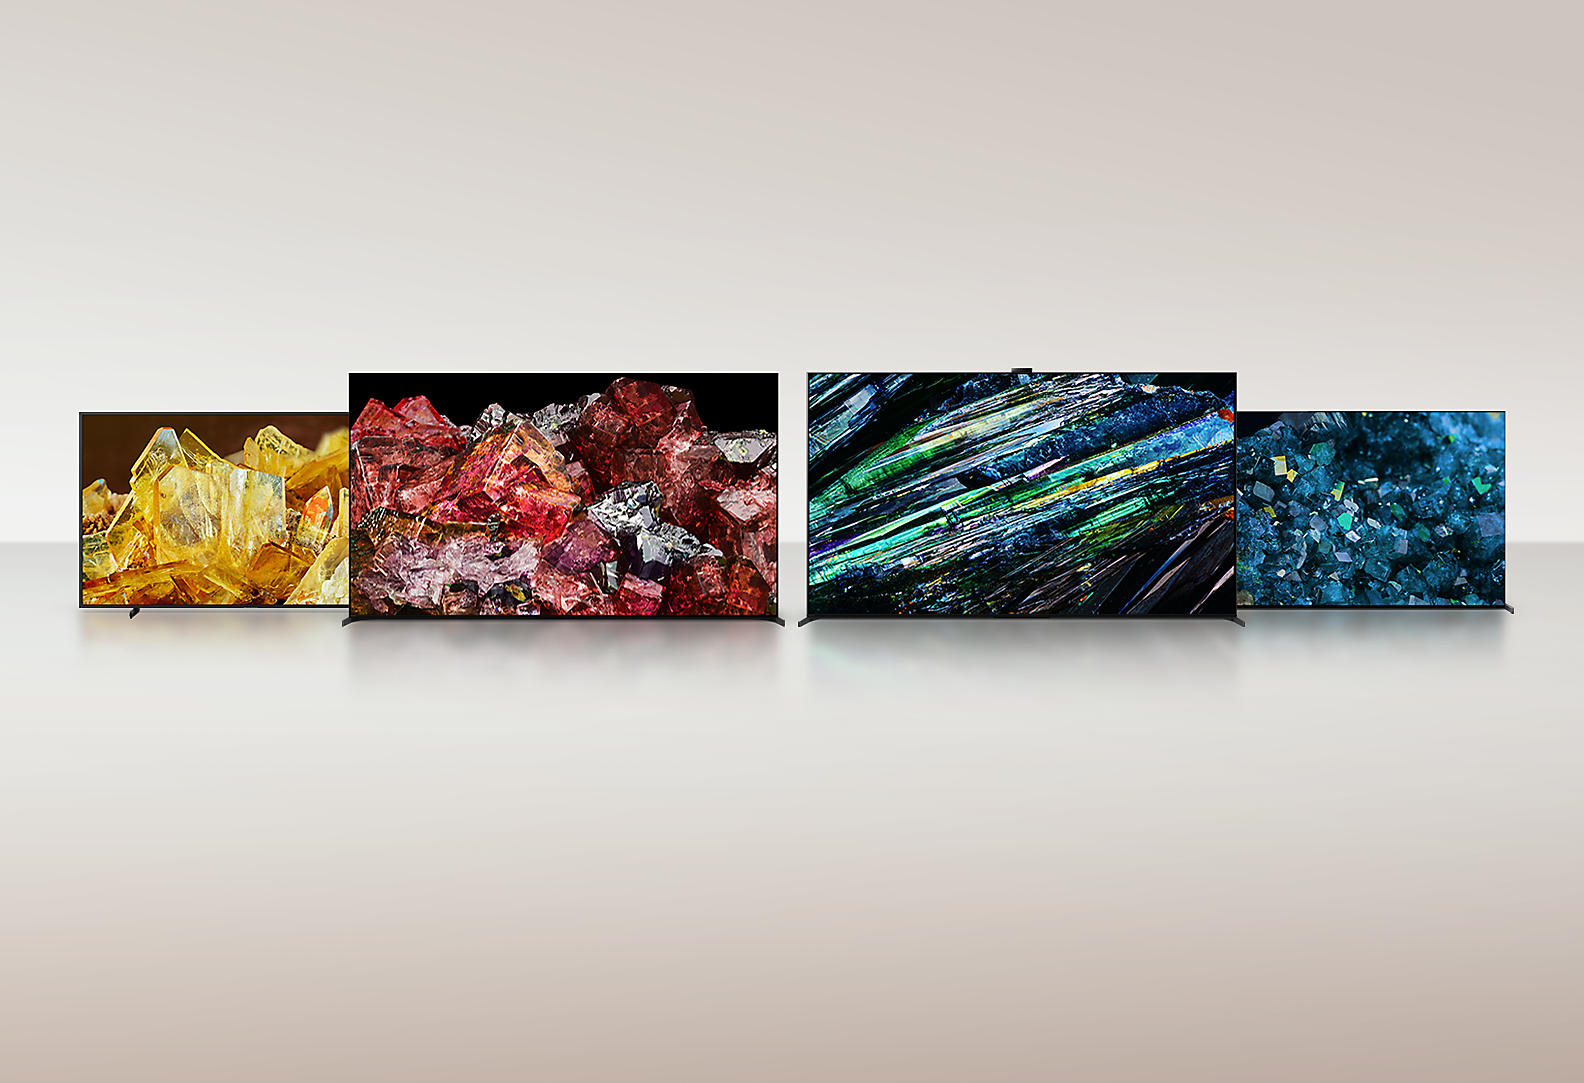 Četiri BRAVIA XR TV-a prikazuju slike različitih kristala na celom ekranu u neverovatnim bojama i detaljima